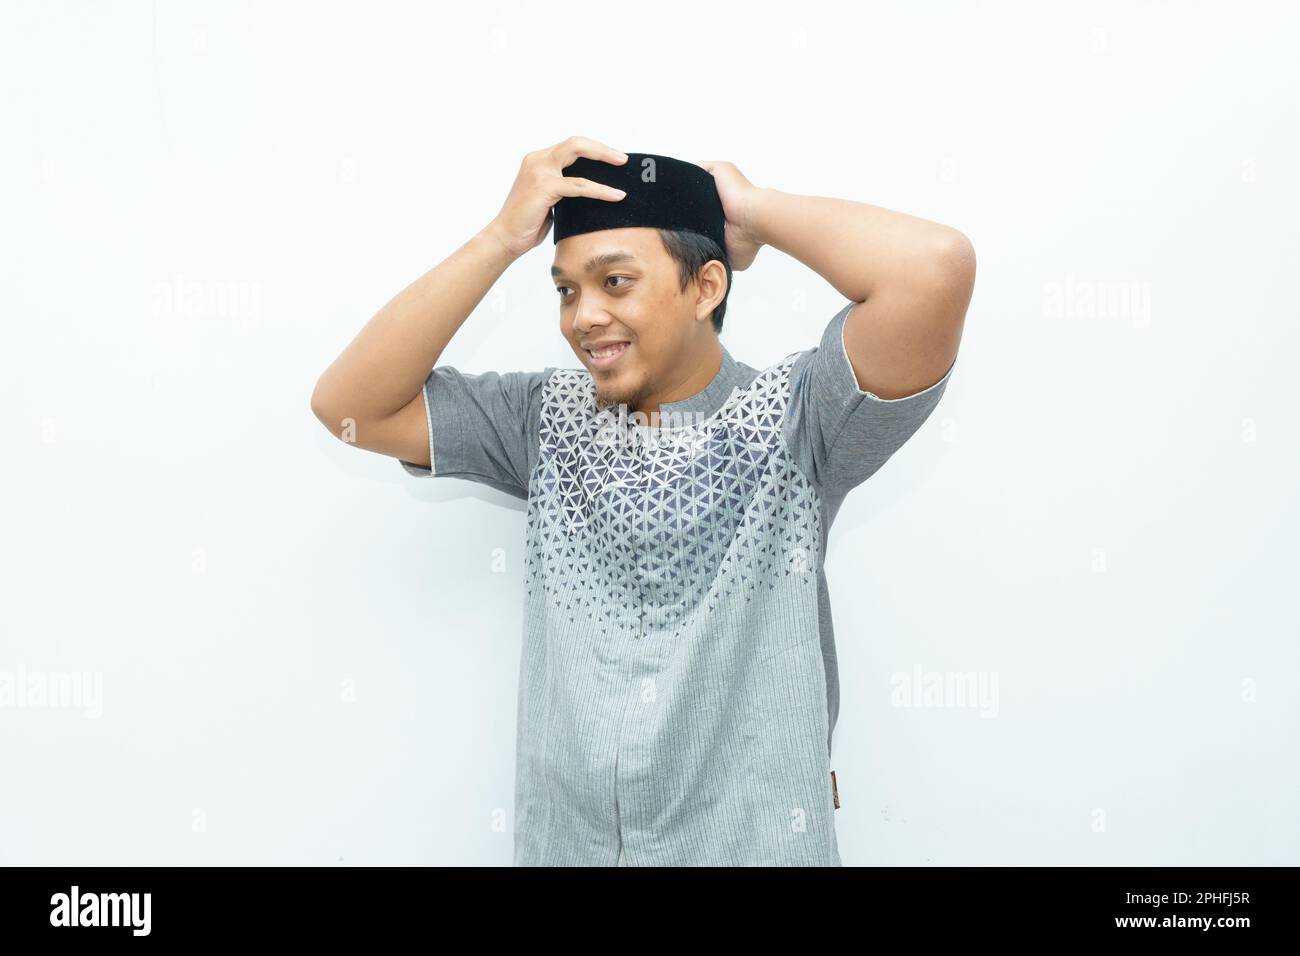 L'uomo musulmano asiatico indonesiano sorridente indossa un cappello nero chiamato peci o songkok Foto Stock